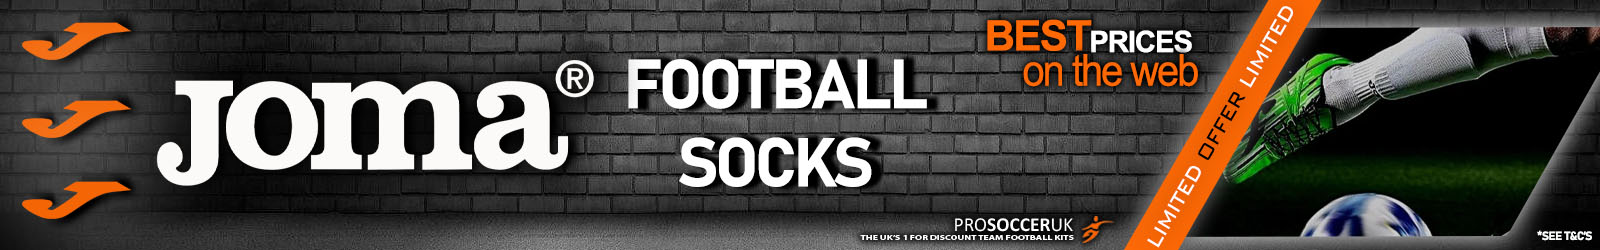 Joma Football Socks